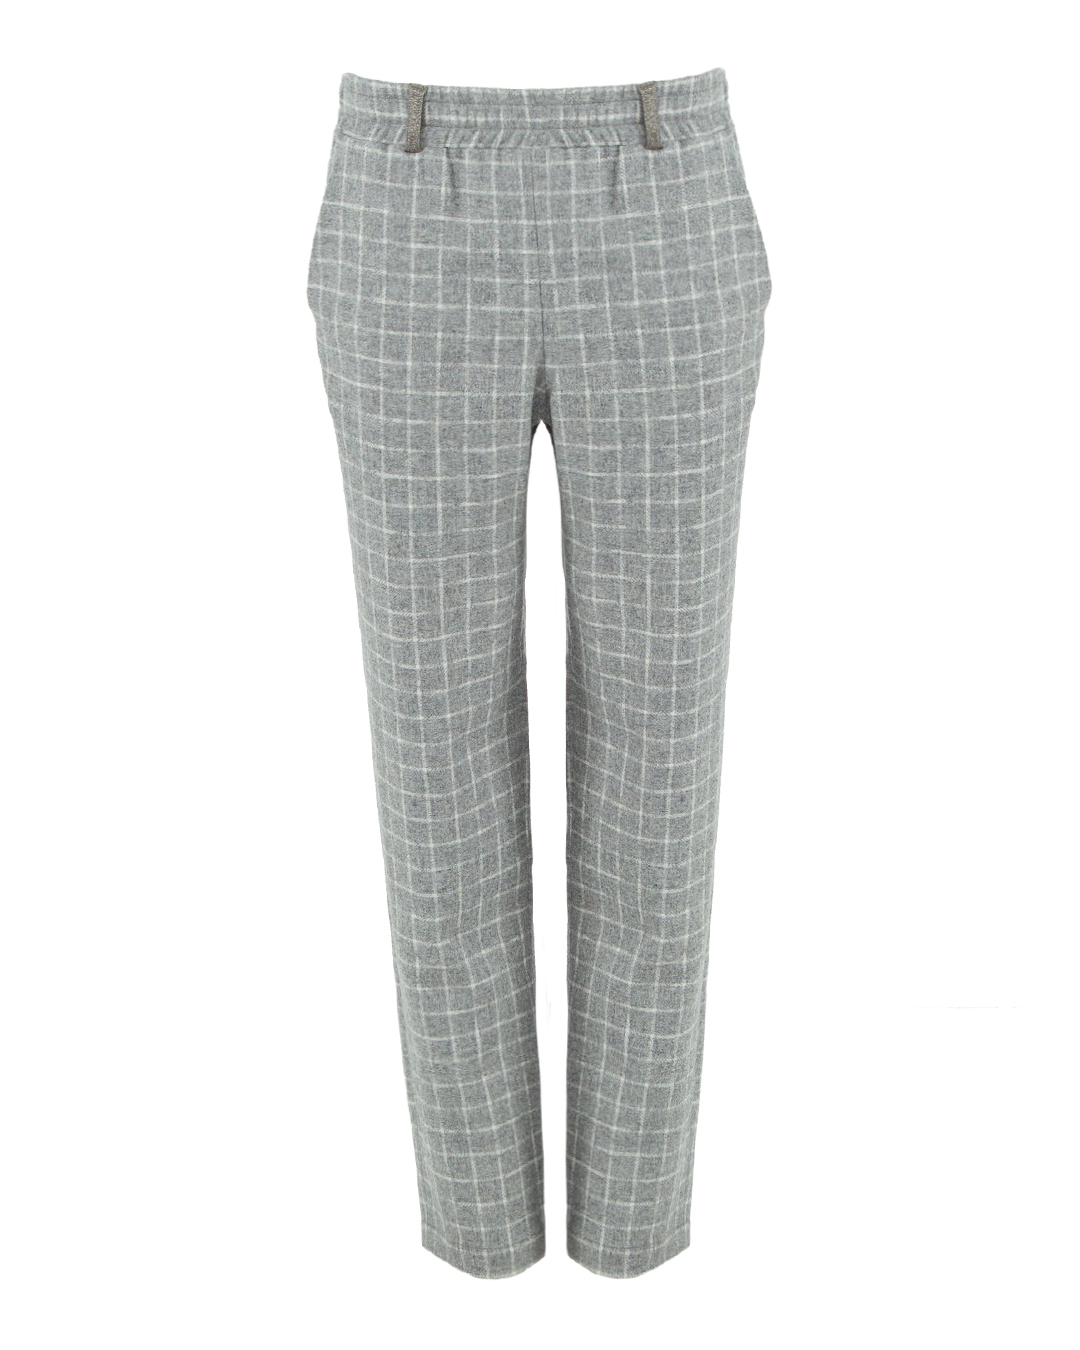 шерстяные брюки MAX&MOI H23BUSH серый+принт 36, размер 36, цвет серый+принт